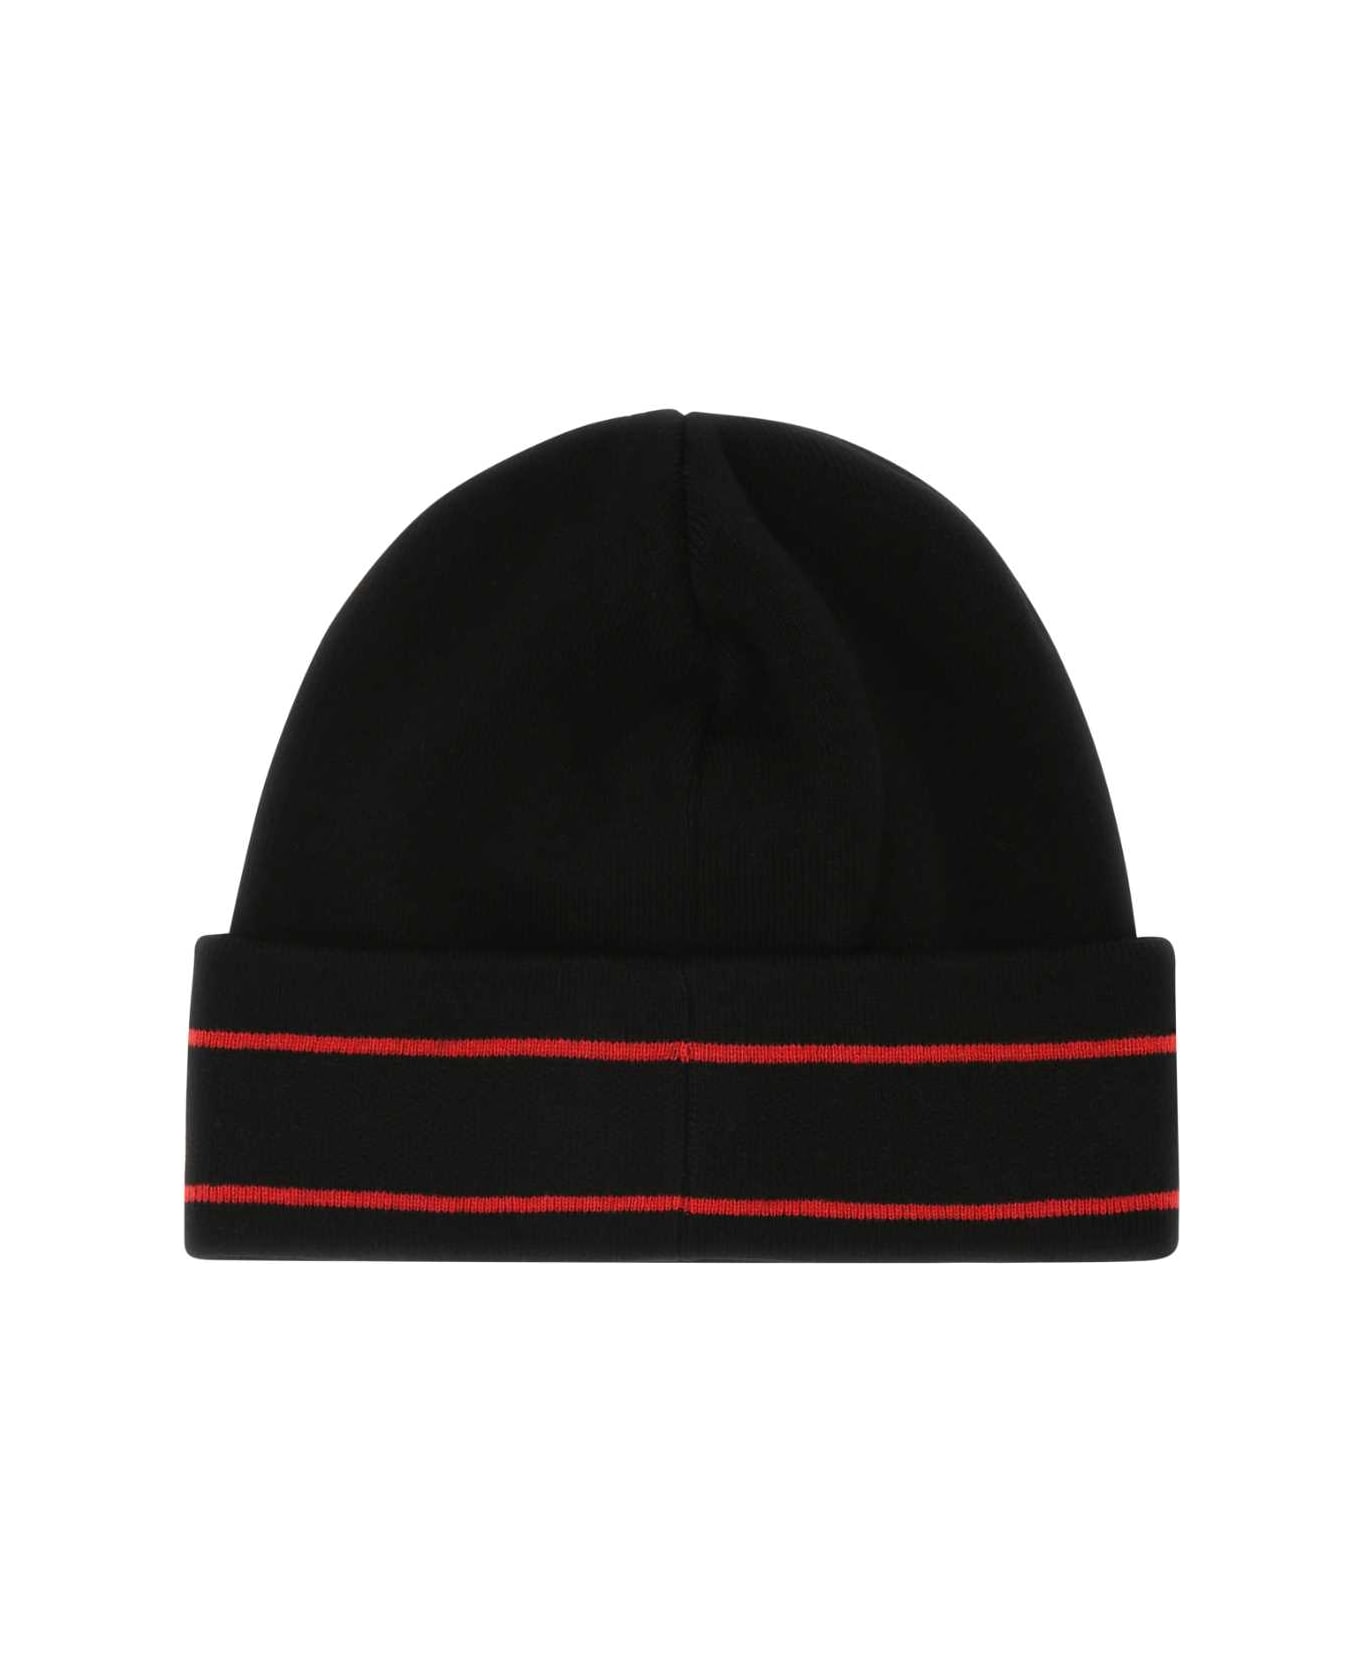 Alexander McQueen Black Cashmere Beanie Hat - 1074